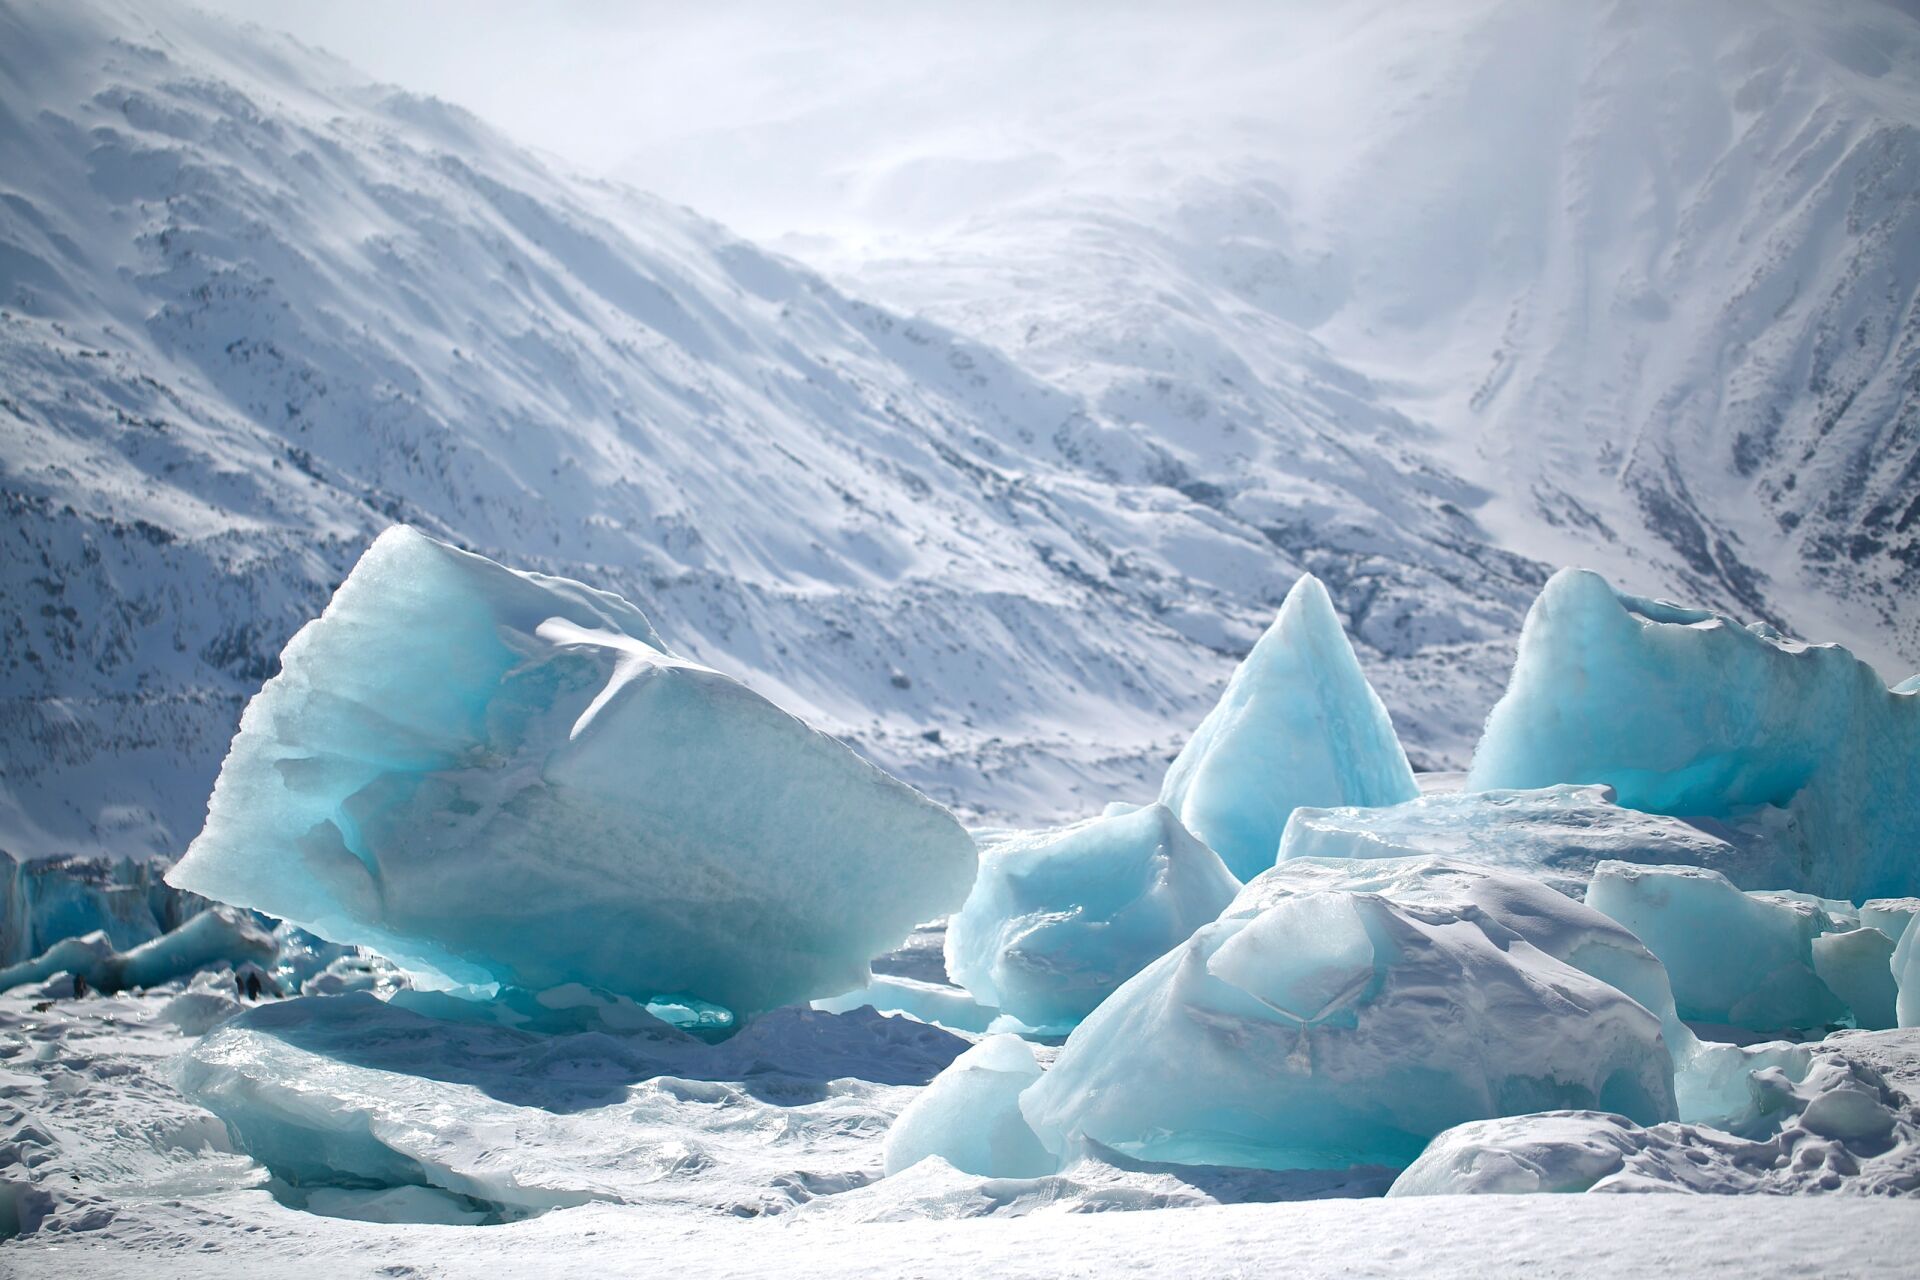 来古冰川 千年蓝冰 来古冰川应该是国内最容易到达而且能看到有蓝冰的